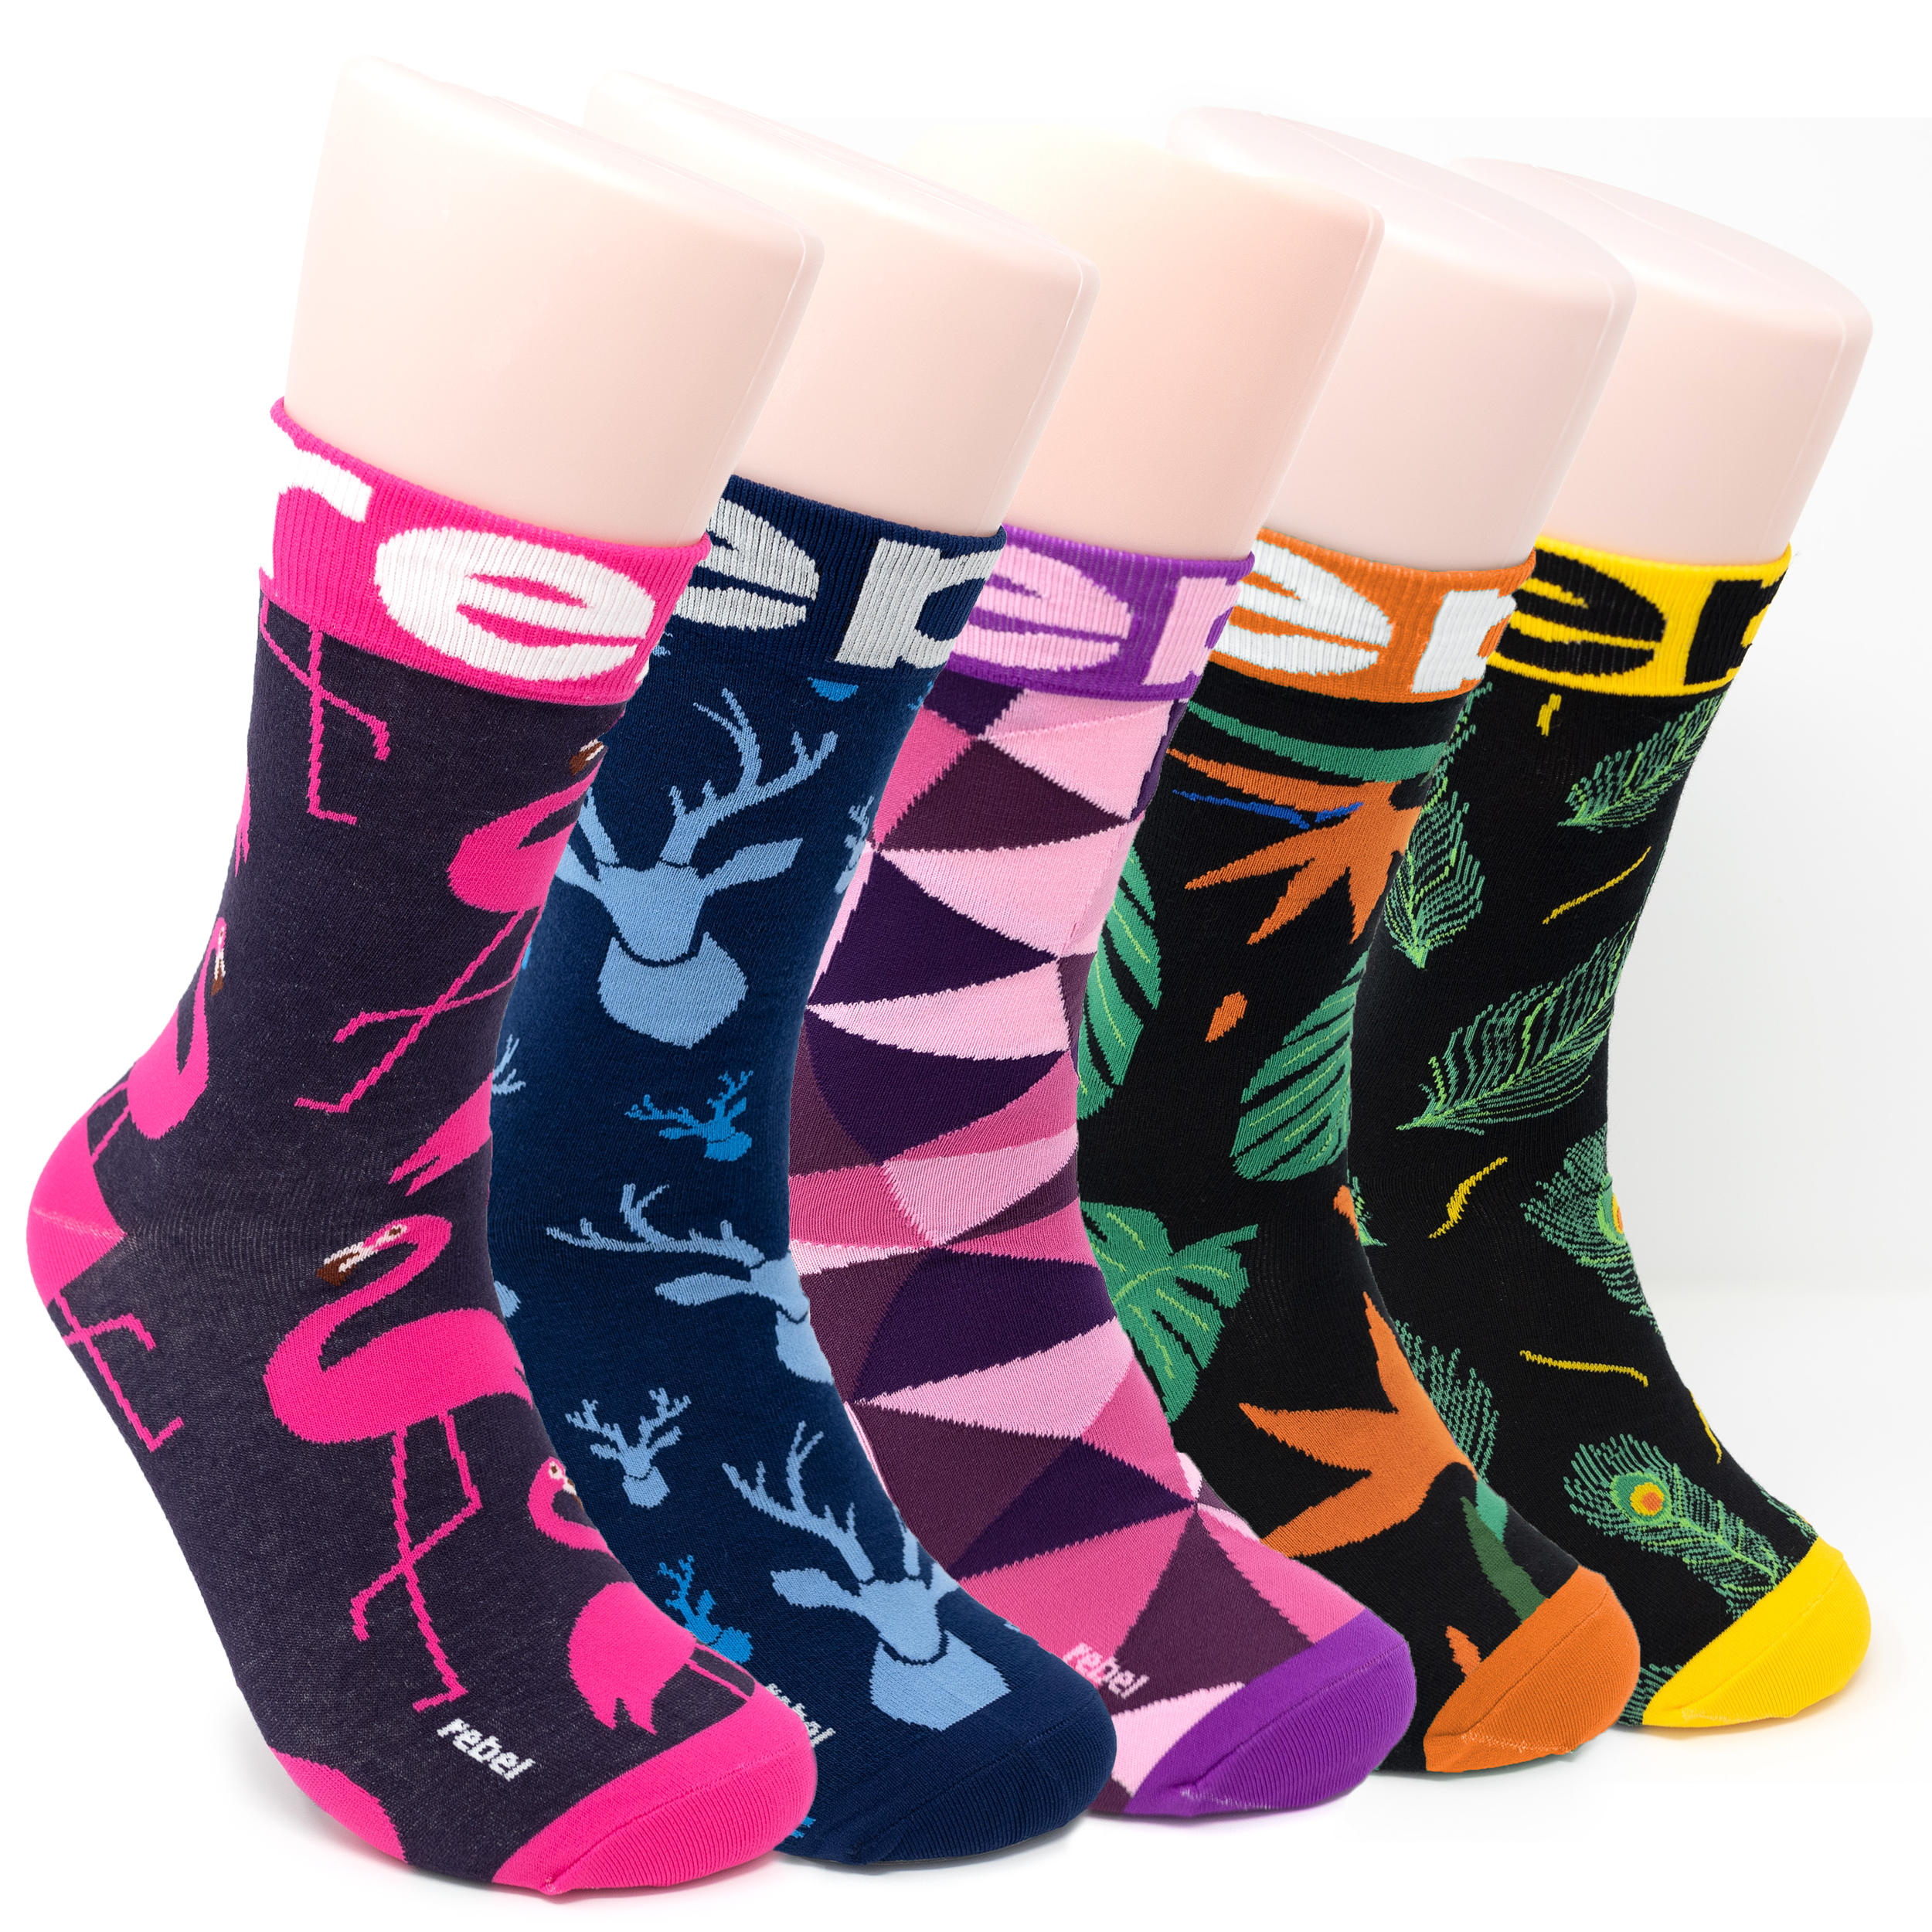 REBELS 0.0% x PAAR Socks - Gift Set